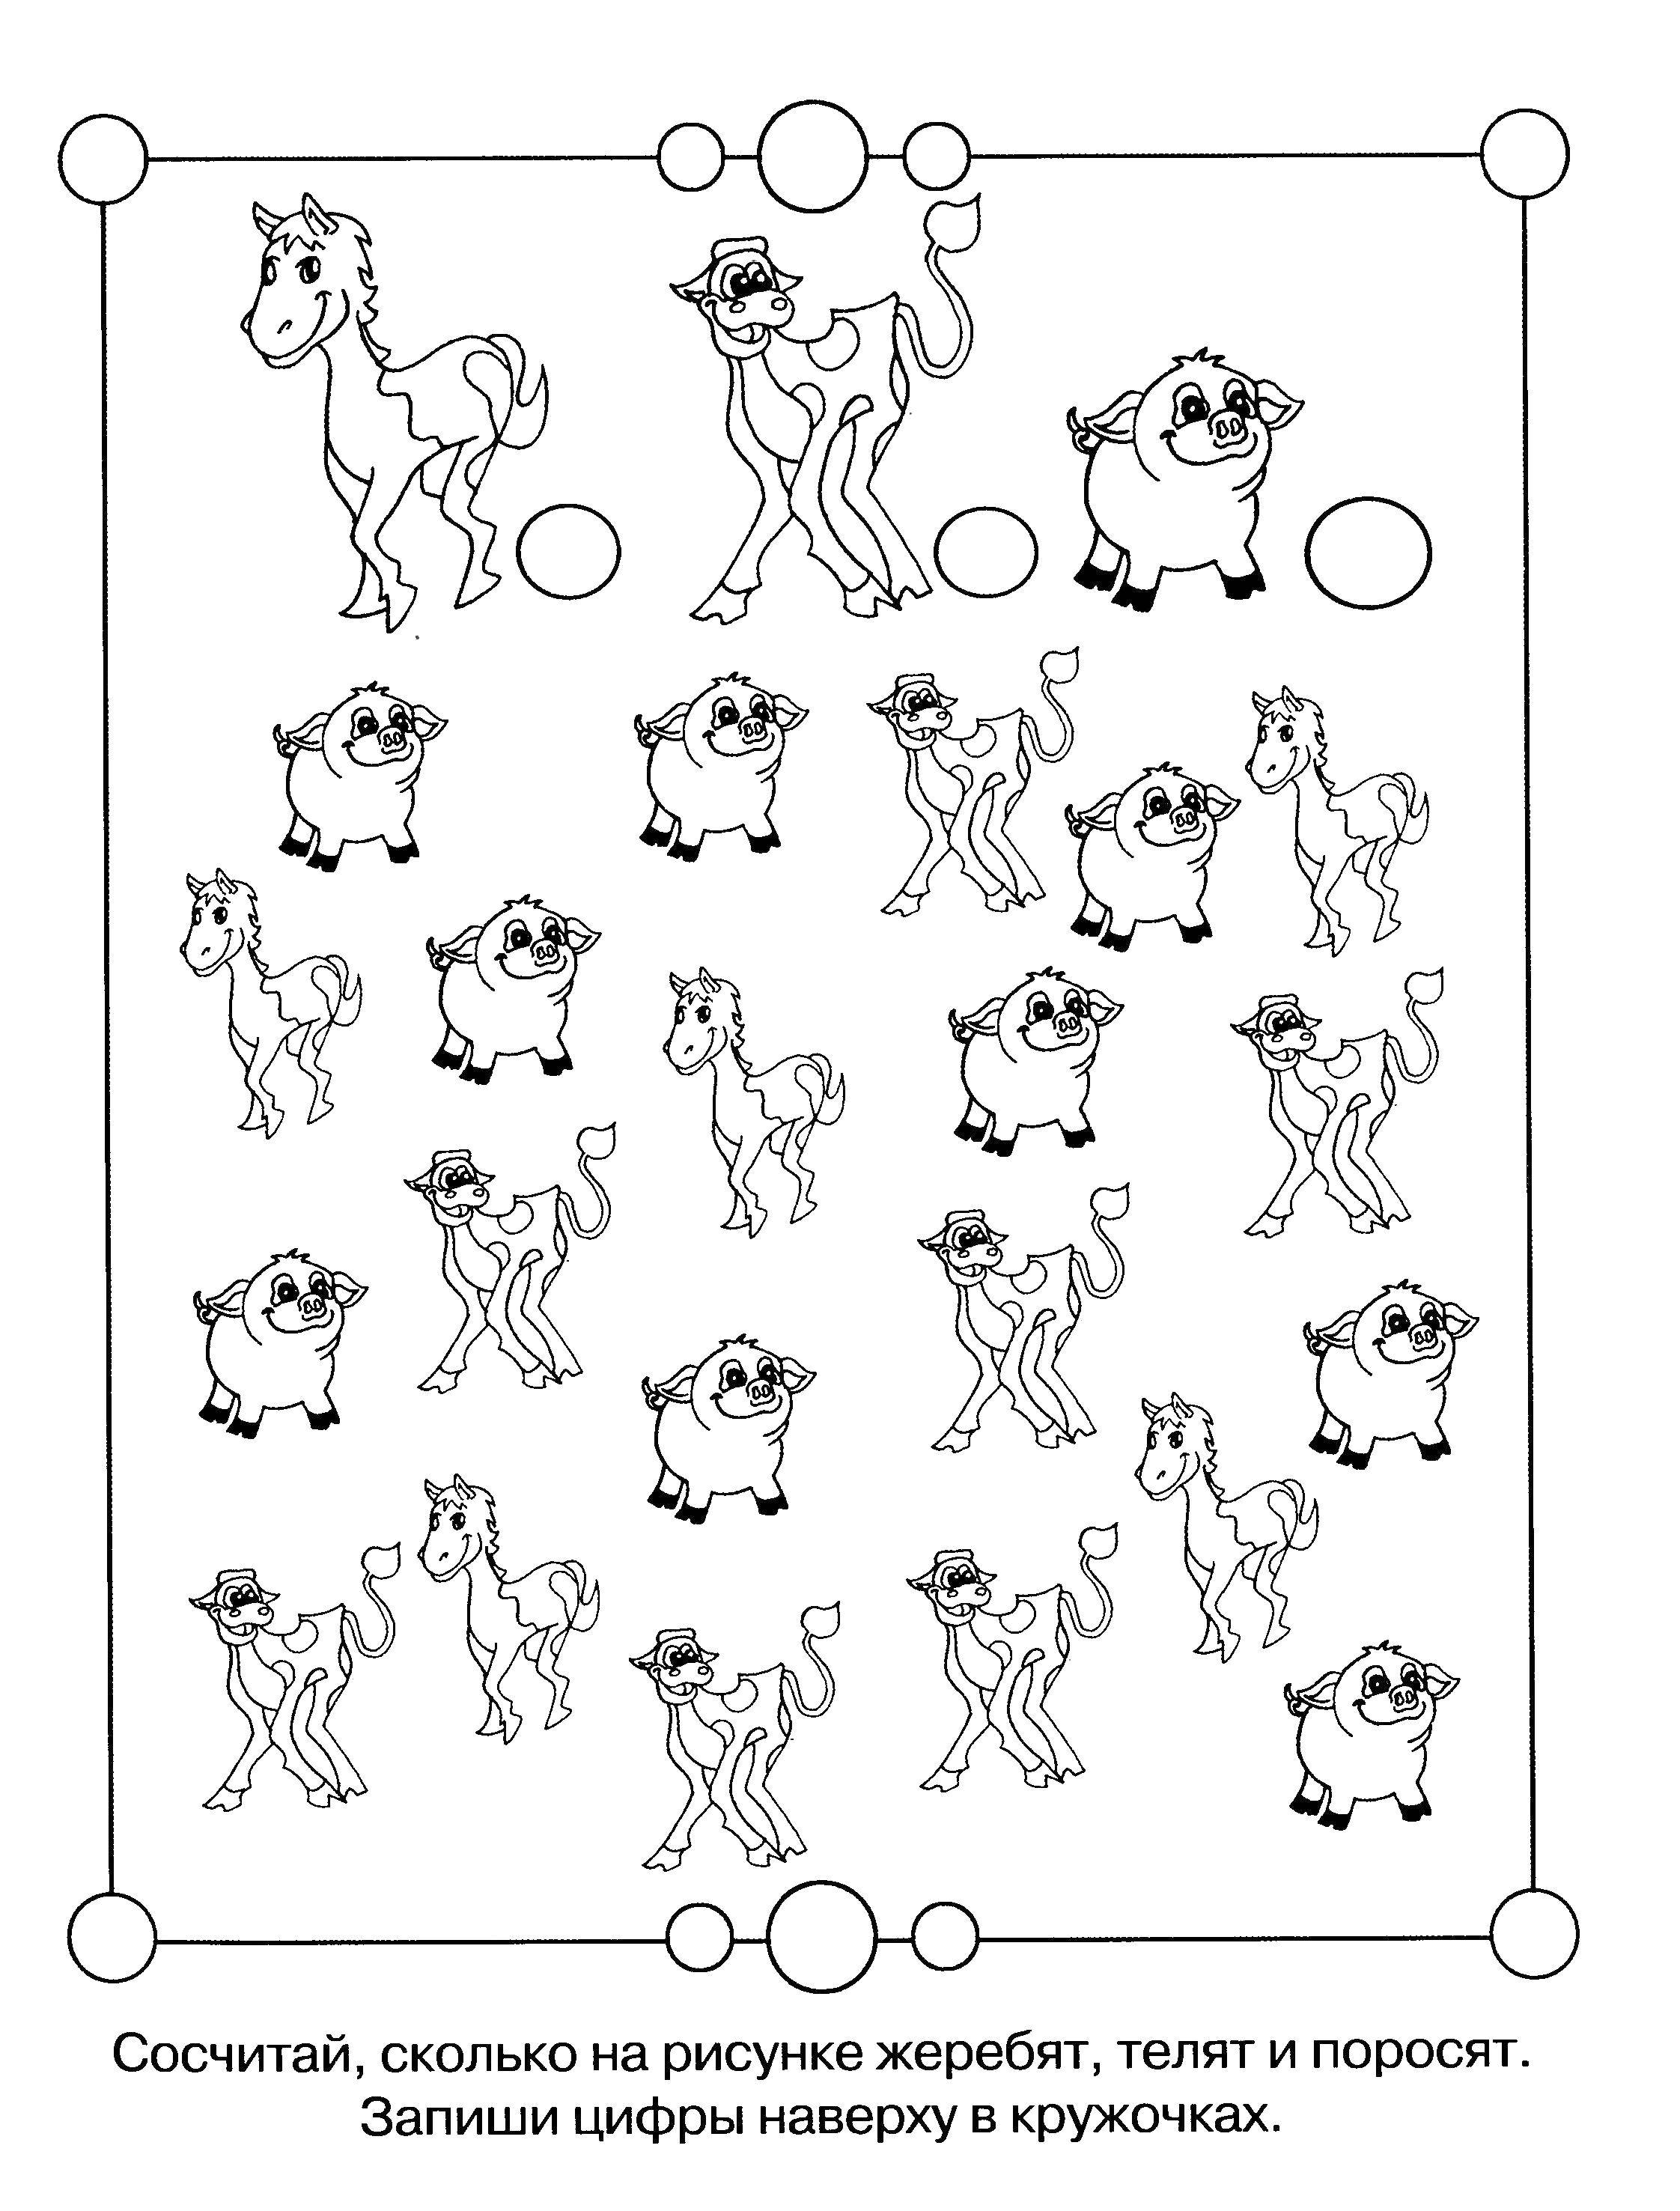 Опис: розмальовки  Порахуй кожного звірка. Категорія: ребуси для дітей. Теги:  Навчальна розфарбування, логіка.